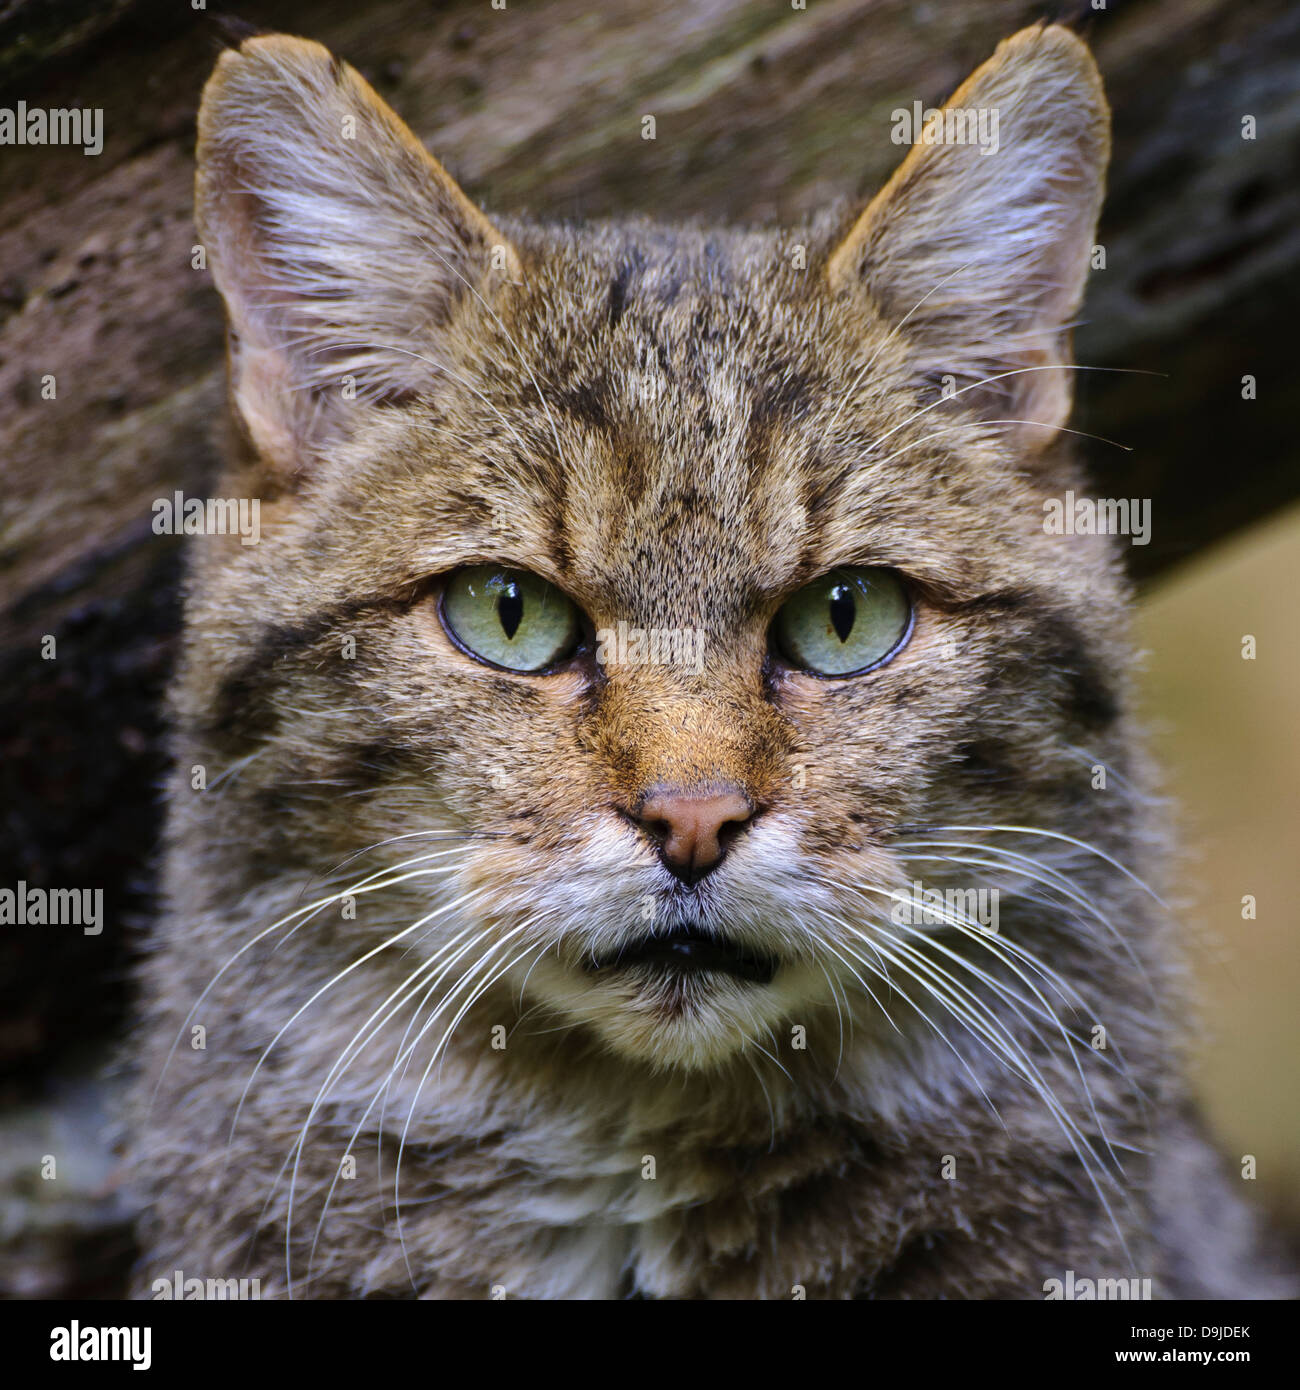 Wildkatze, wildcat, Felis silvestris Stock Photo